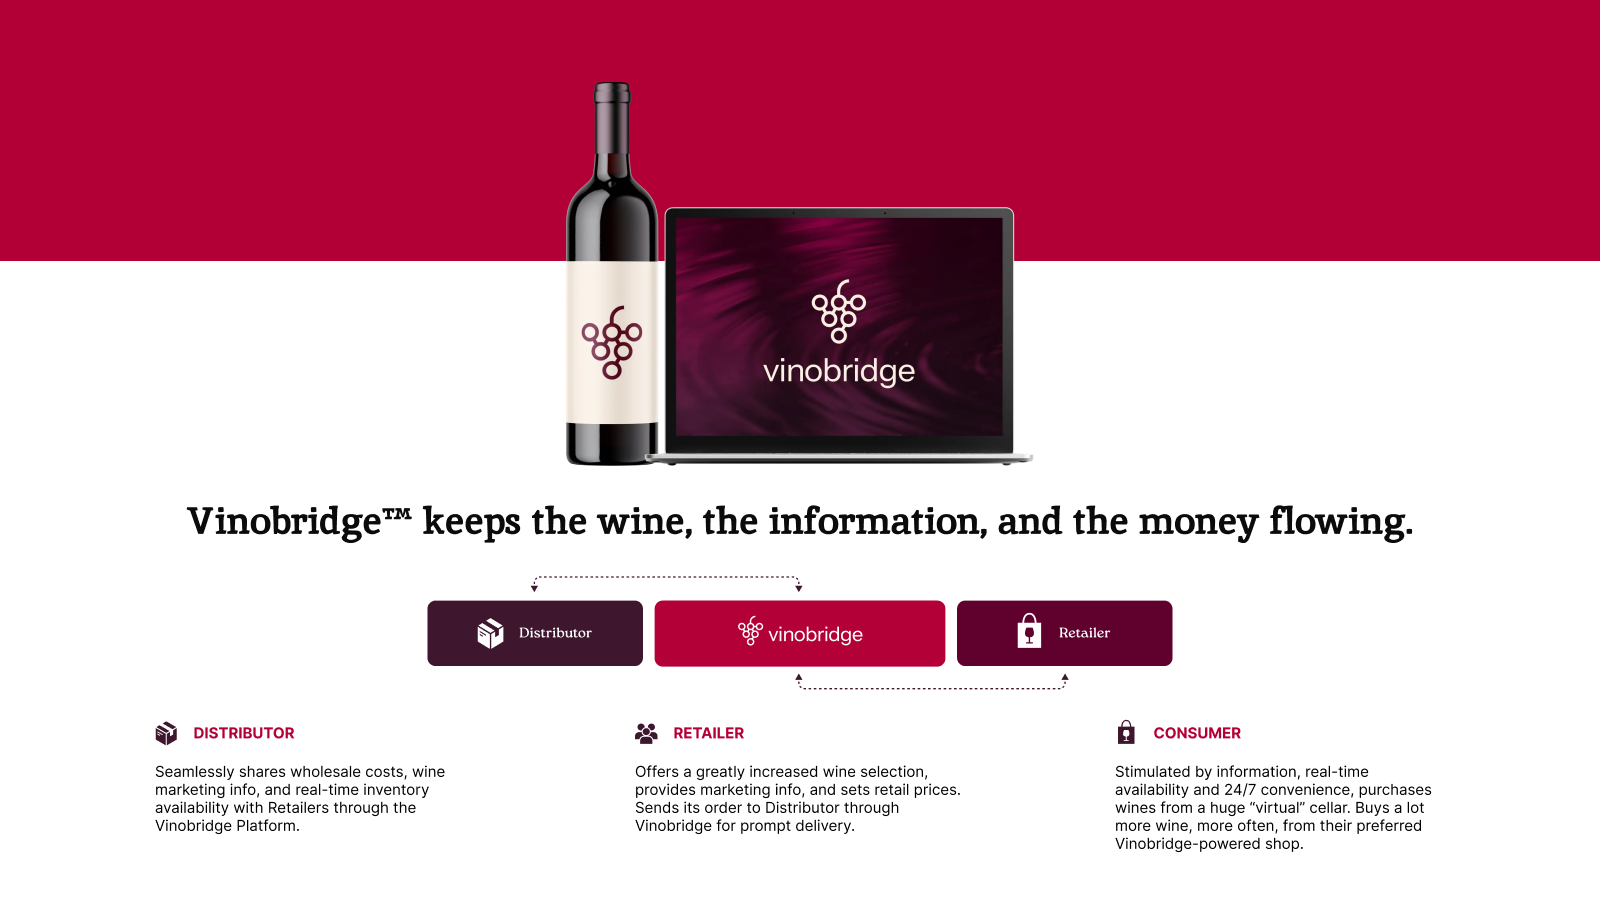 Stroomlijn groothandel wijn data: kosten, marketing, inventaris.